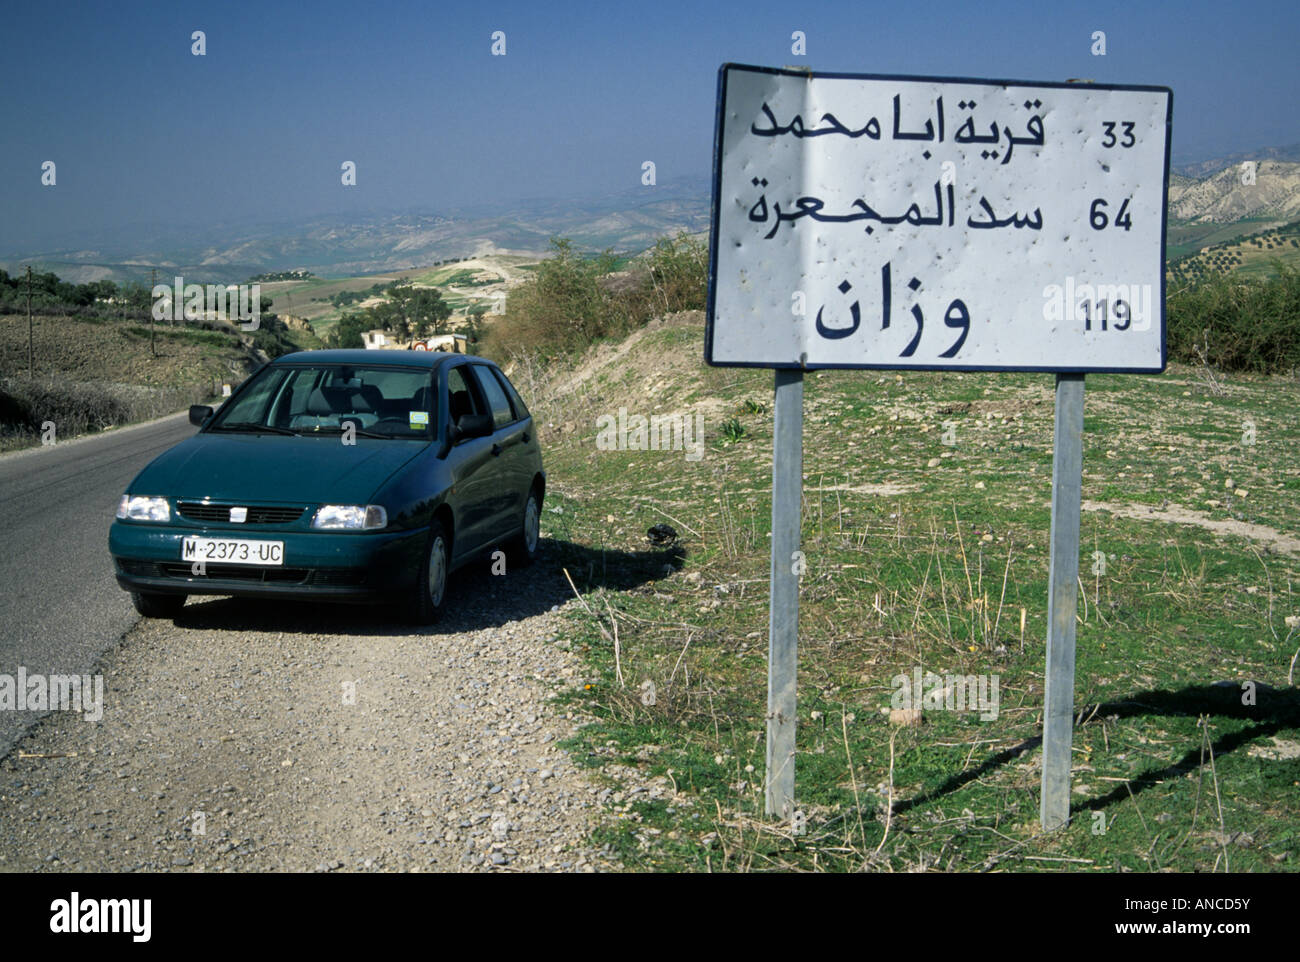 Arabisches Alphabet Zeichen auf Straße P26 von Ouezzane nach Fes, Marokko Stockfoto